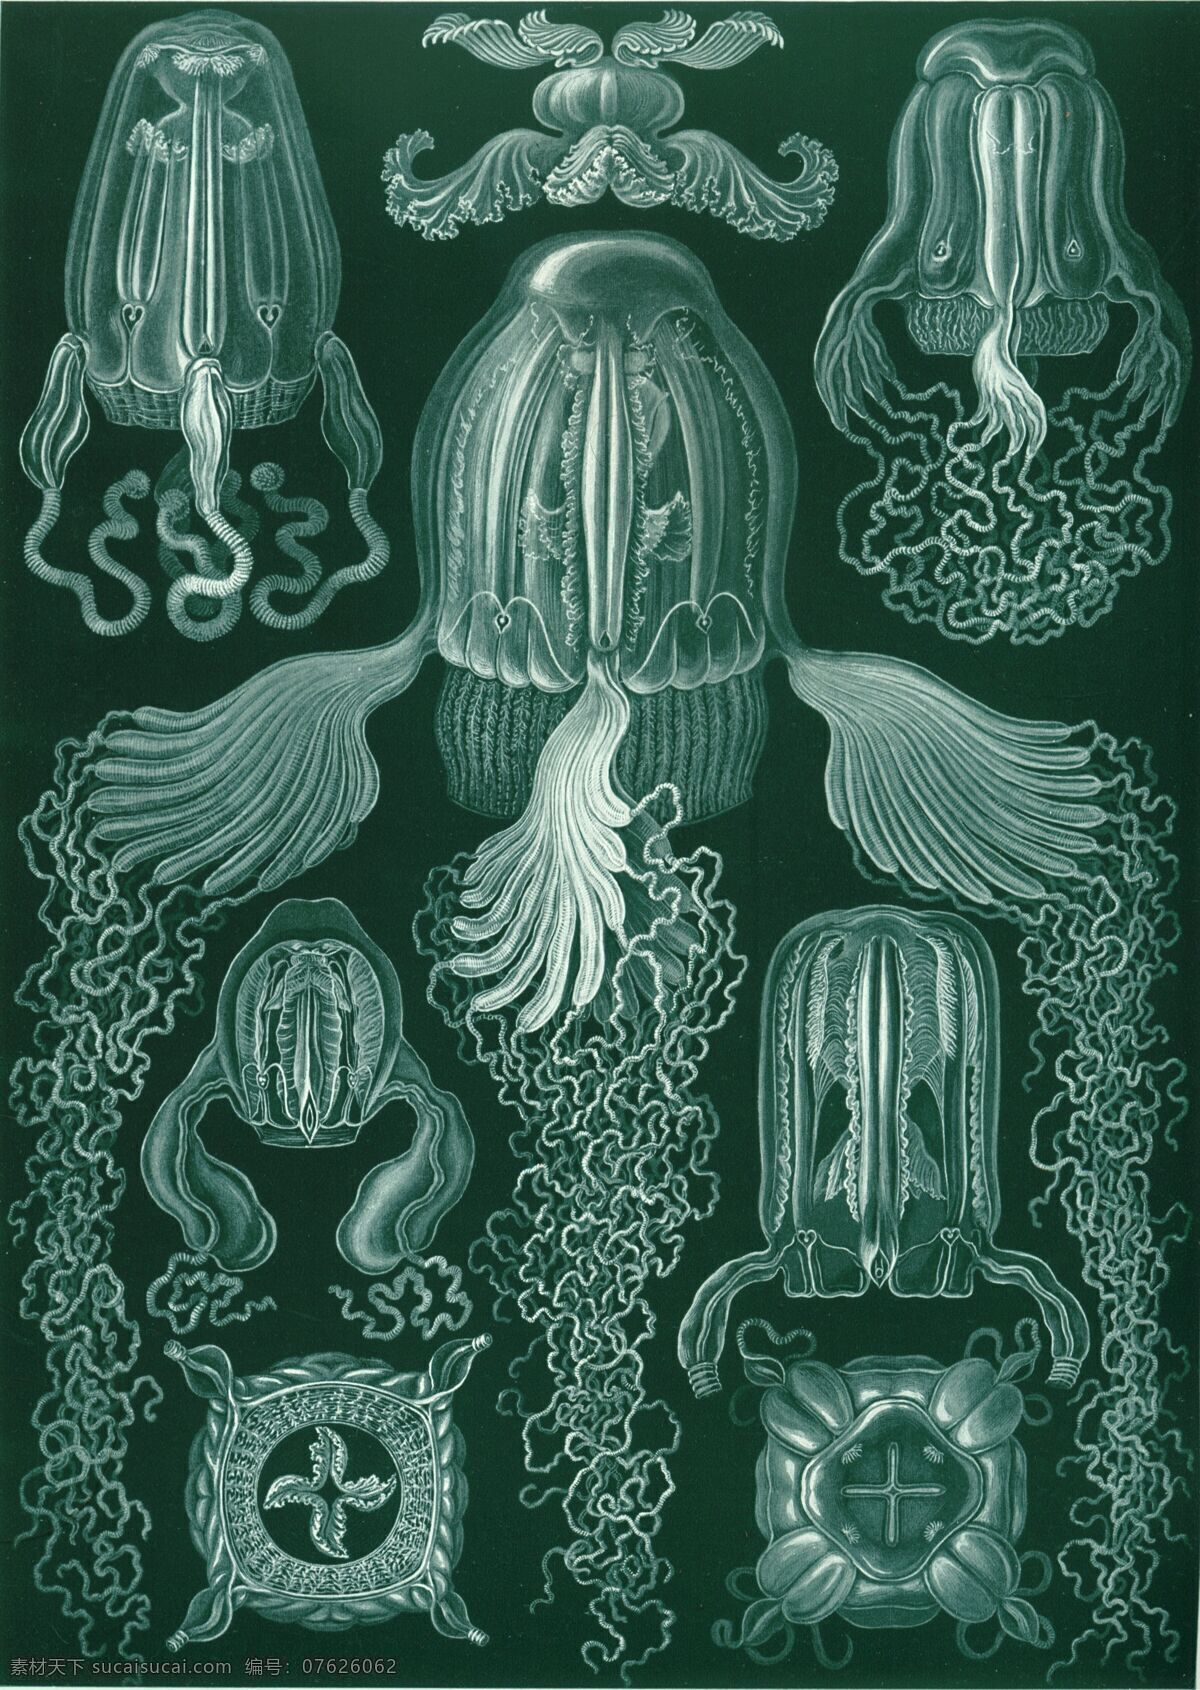 水母灵感 水母设计 海底生物 透明生物 单细胞生物 奇异生物 水母 水母图案 海洋生物 生物世界